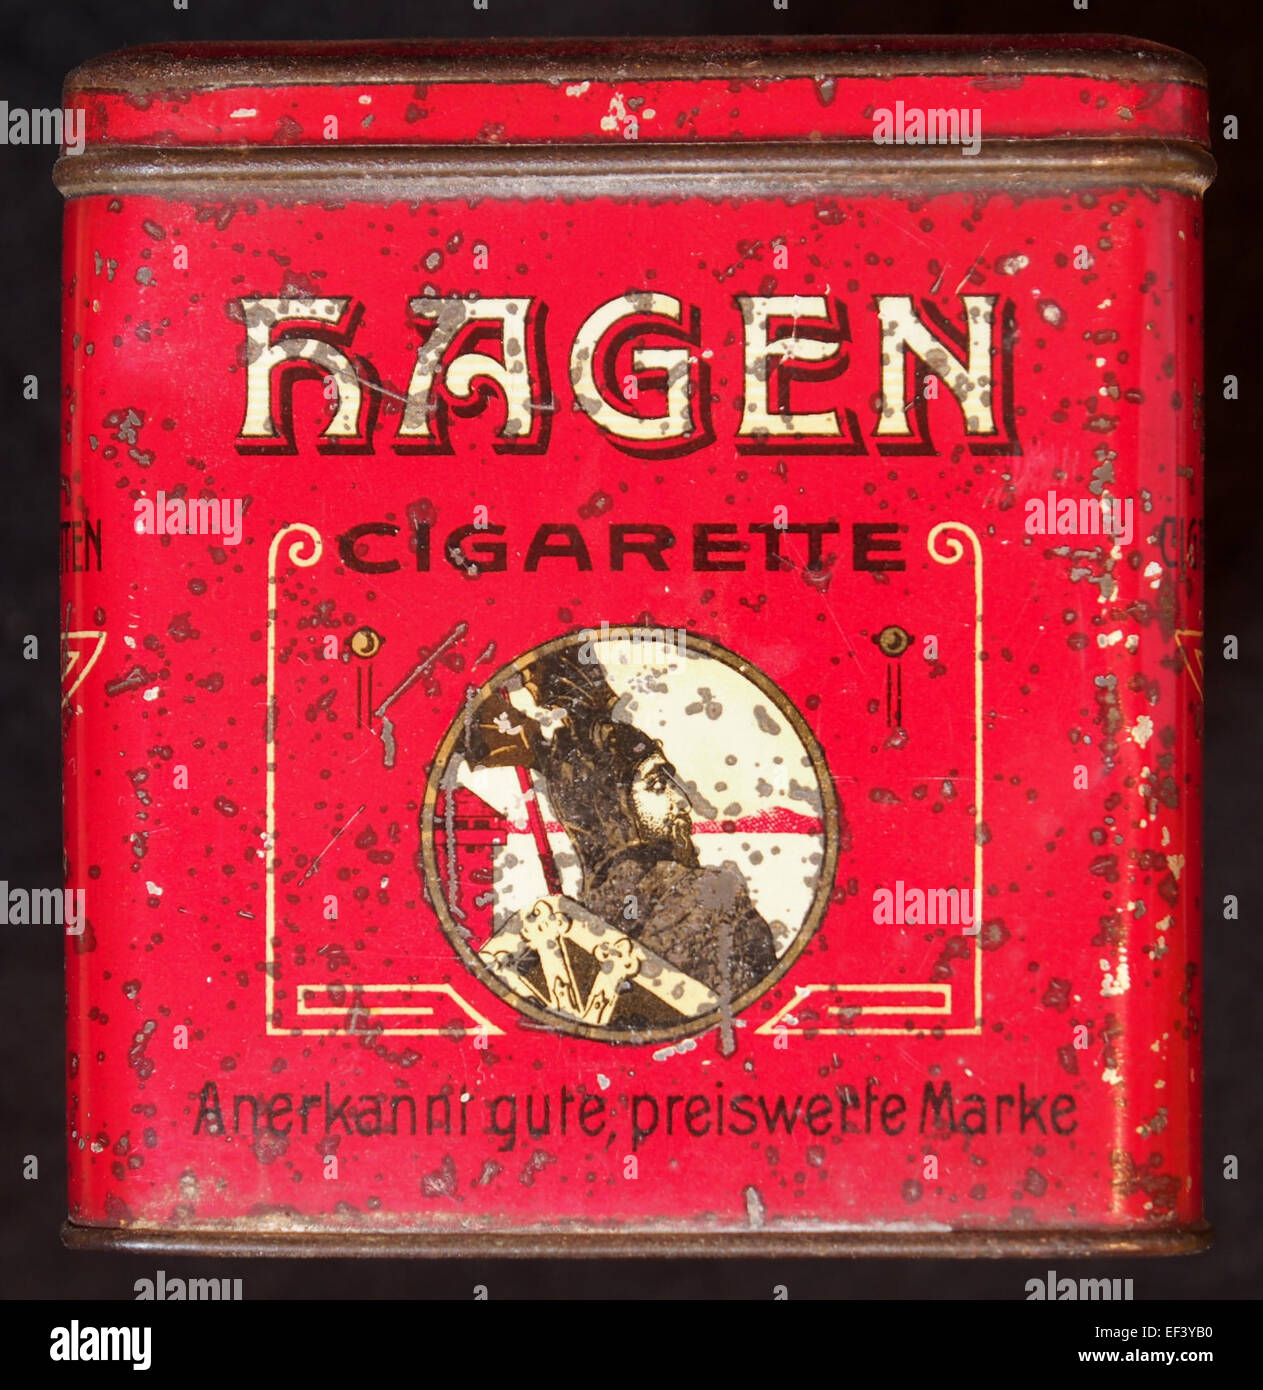 Hagen Blechdose sigaretta, anteriore Foto Stock